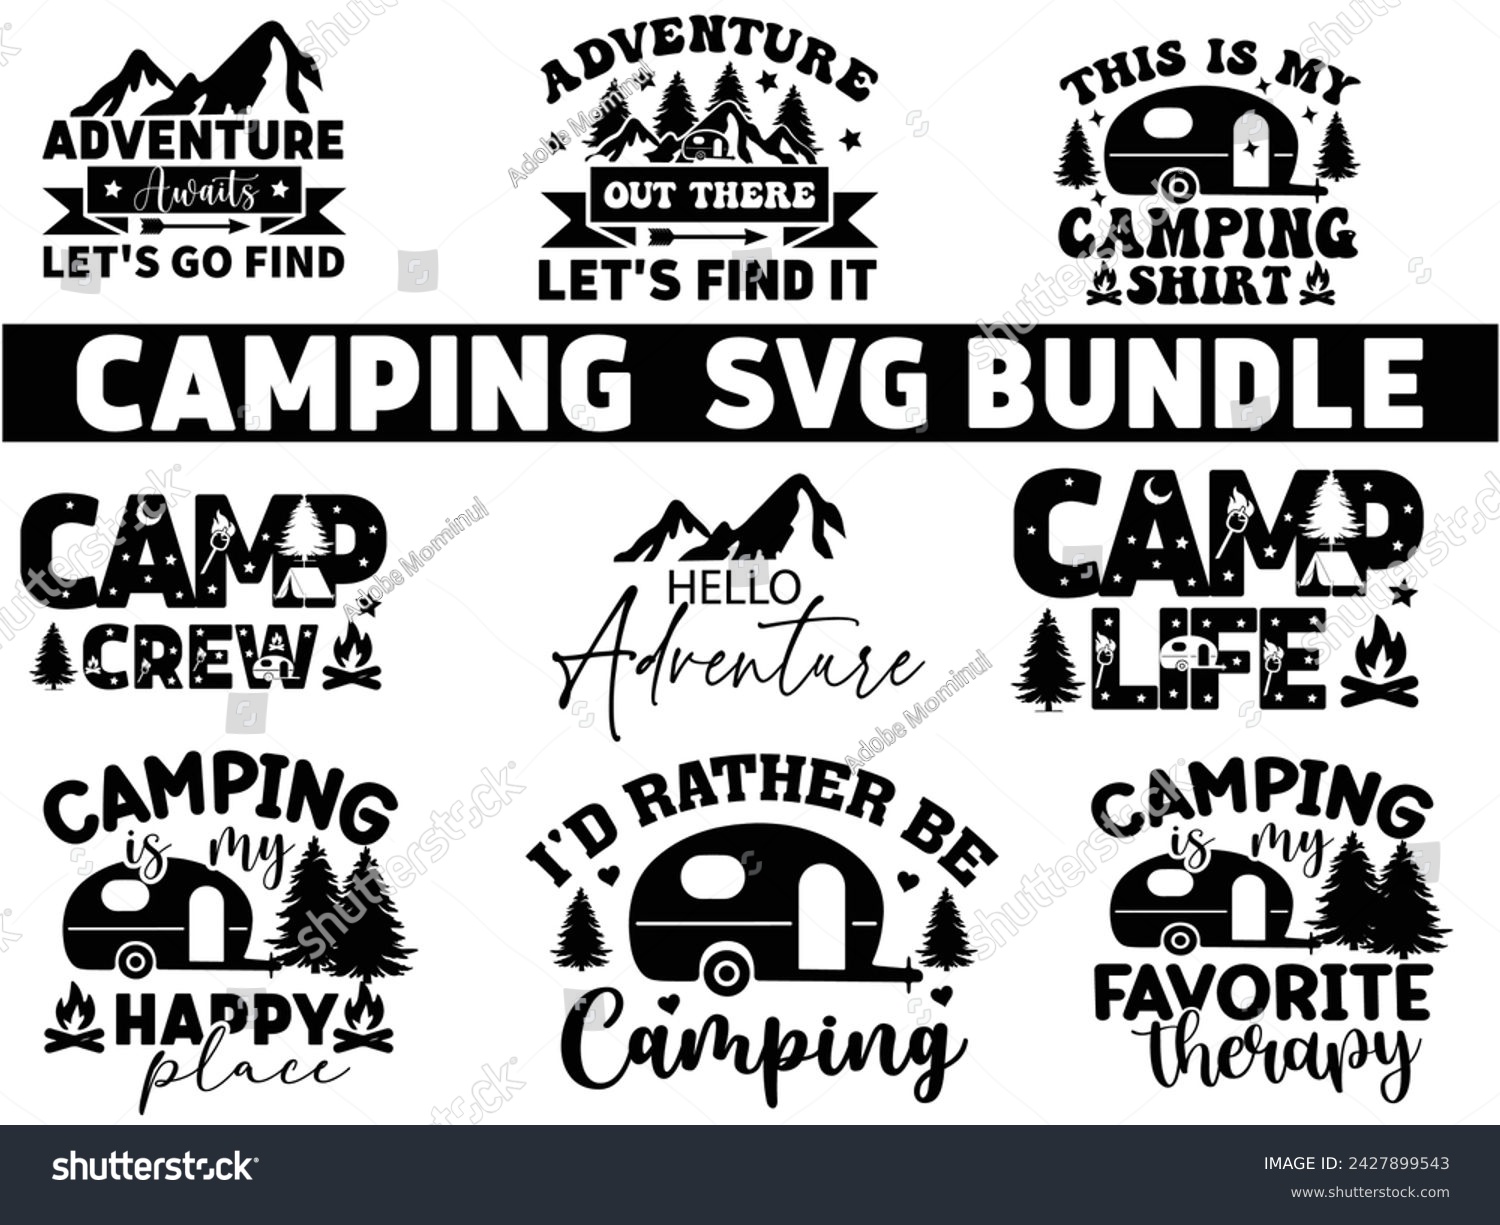 SVG of Camping Design bundle,Happy Camper Svg,Camping Svg,Adventure Svg,Hiking Svg,Camp Saying,Camp Life Svg,Svg Cut Files, Png,Mountain T-shirt,Instant Download svg